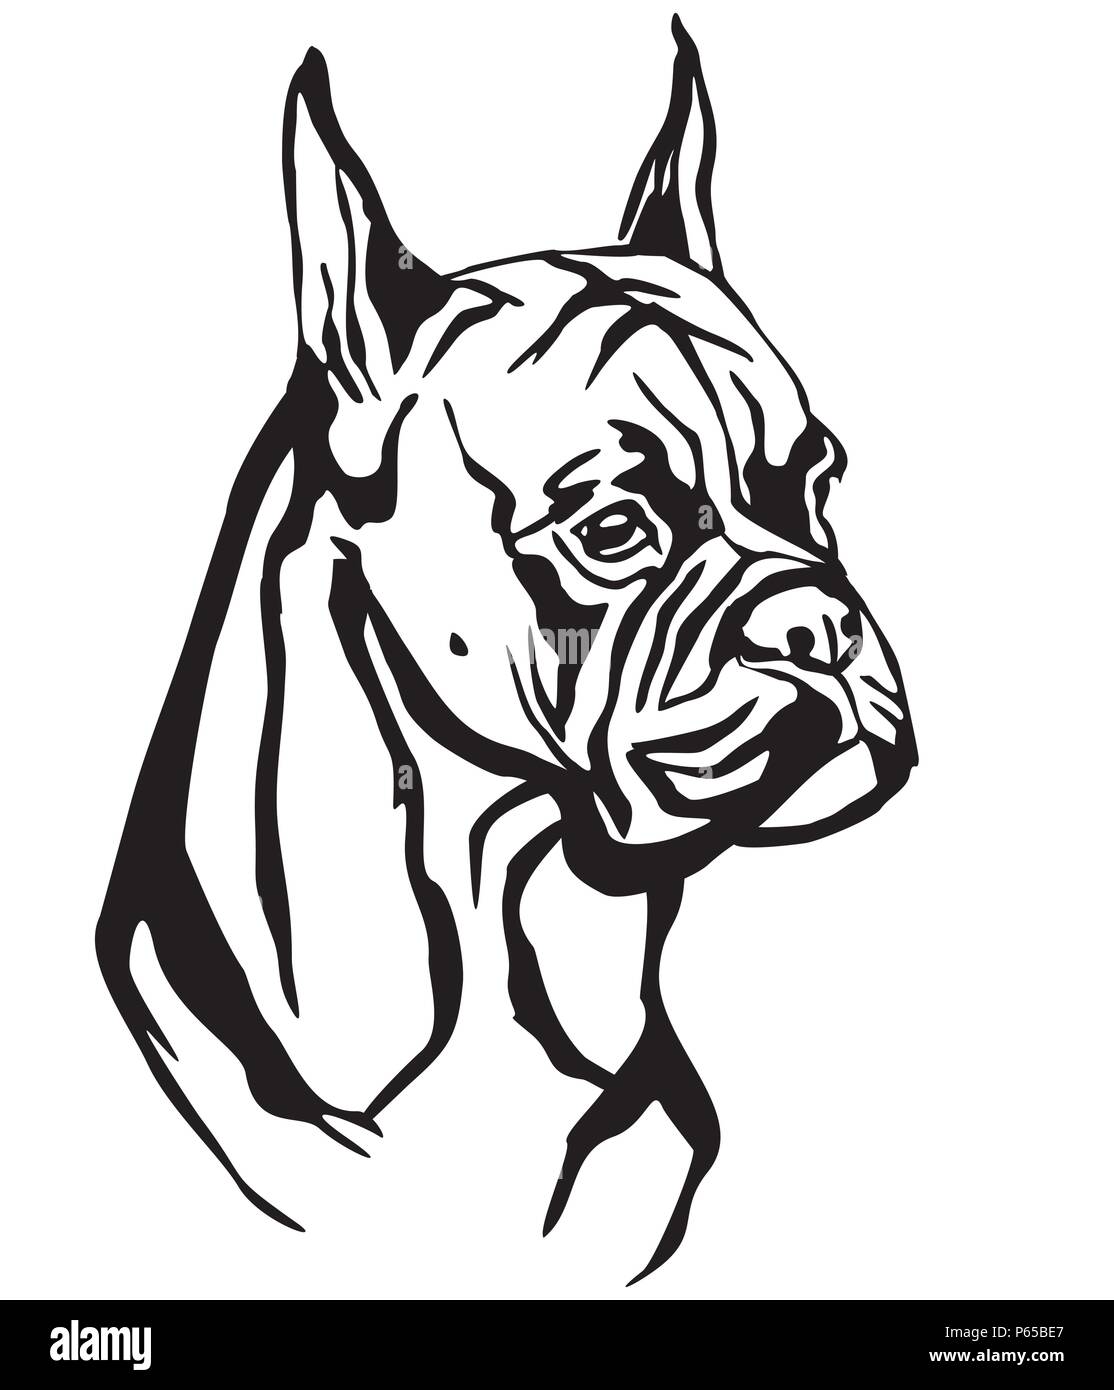 Dekorative Portrait von Hund Boxer, Vektor isoliert Abbildung in schwarz auf weißem Hintergrund. Bild für Design und Tattoo. Stock Vektor